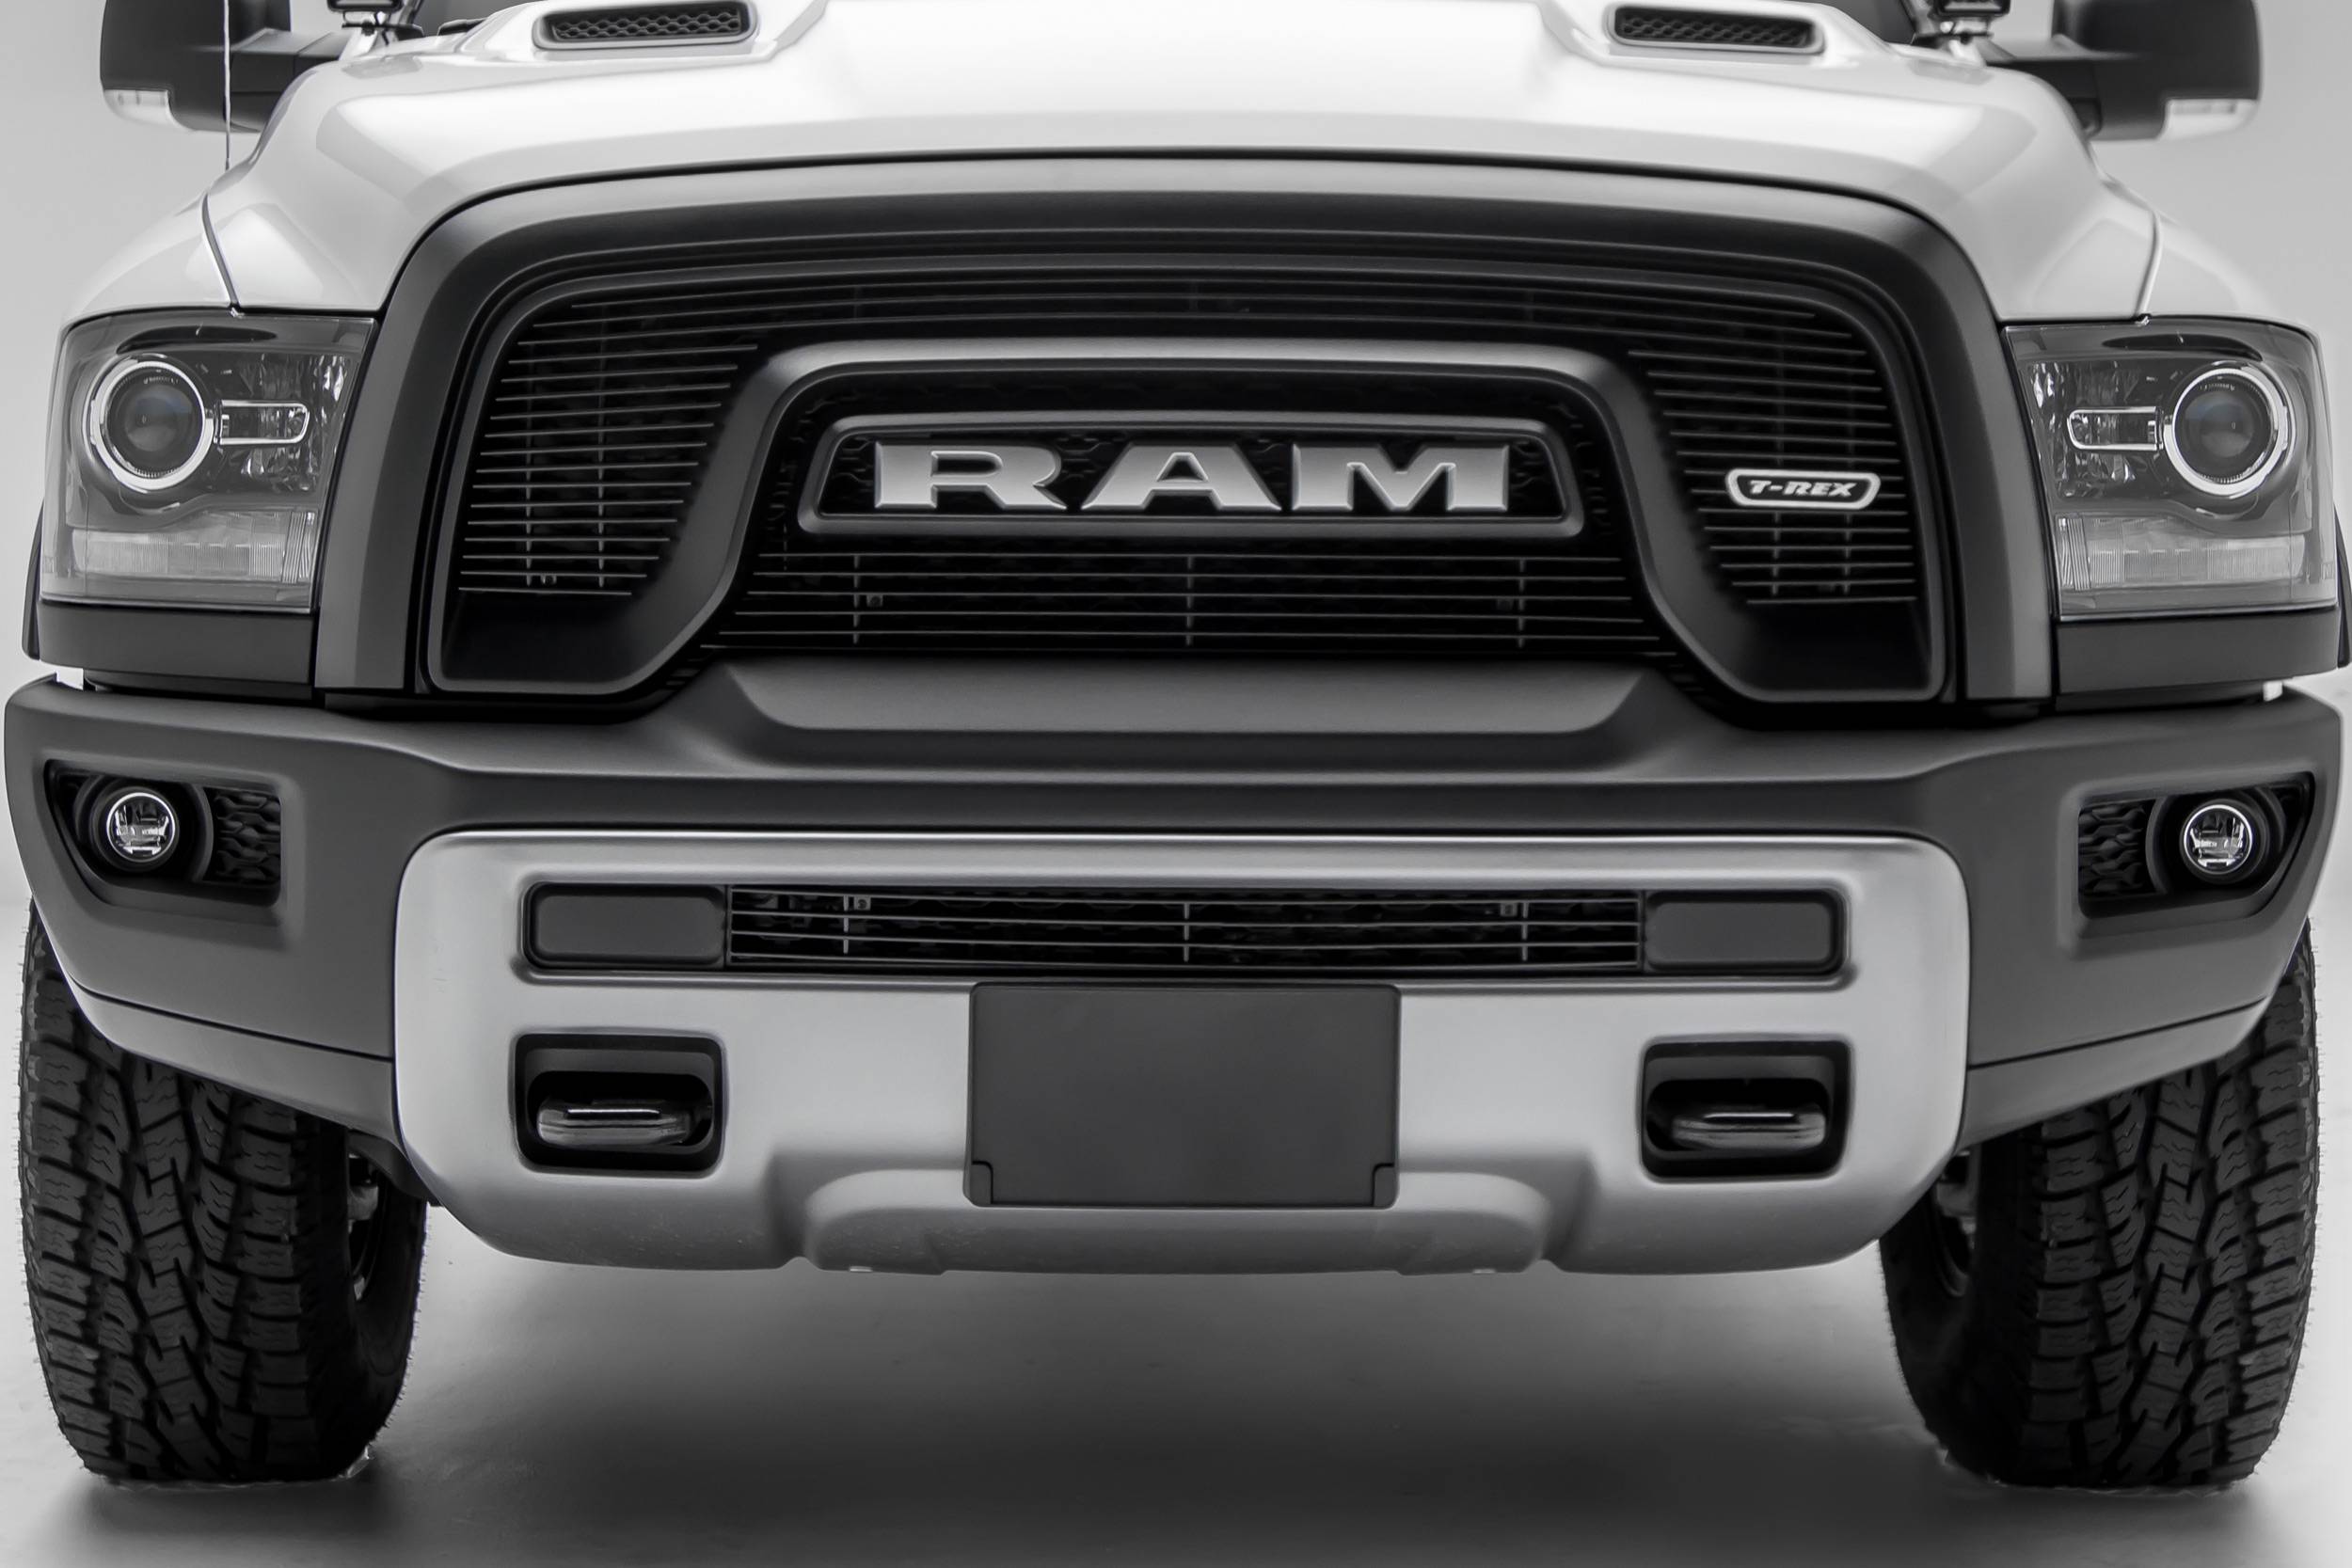 Polished Billet Grille Bumper Insert For 2015-2018 Dodge RAM Rebel 1500